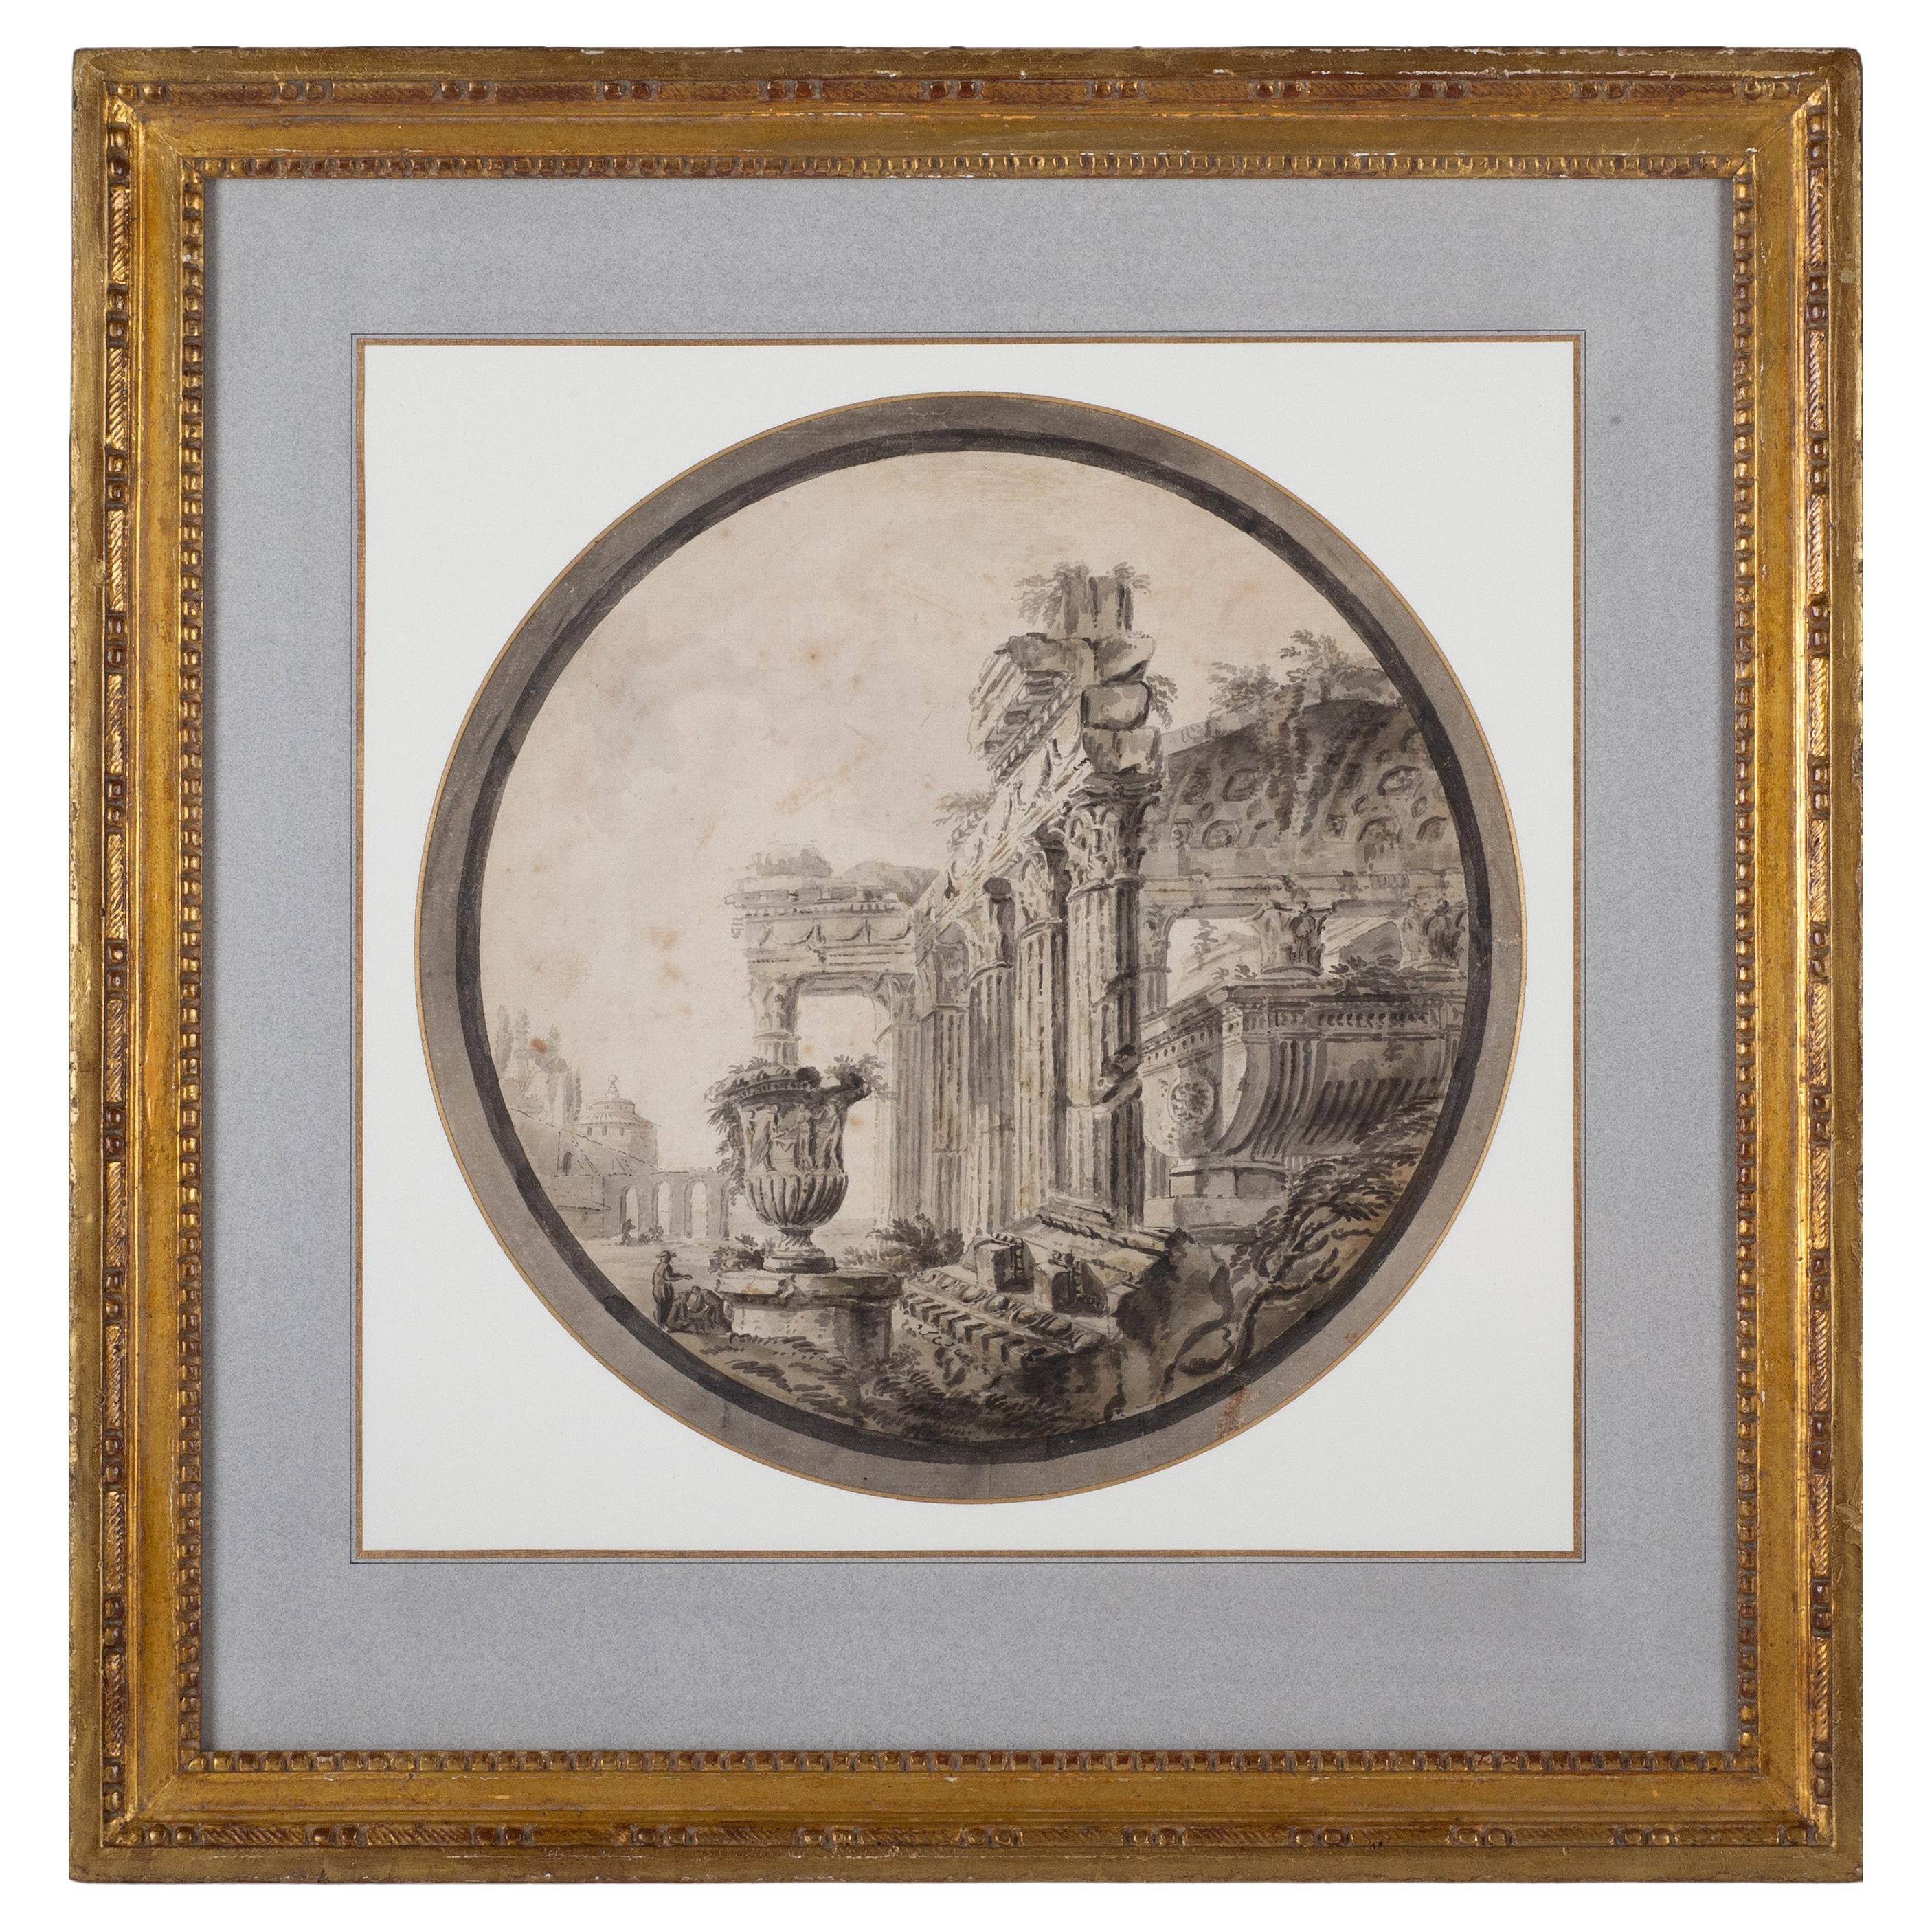 Neoklassizistische Zeichnung römischer Ruinen, Französische Schule des 18. Jahrhunderts